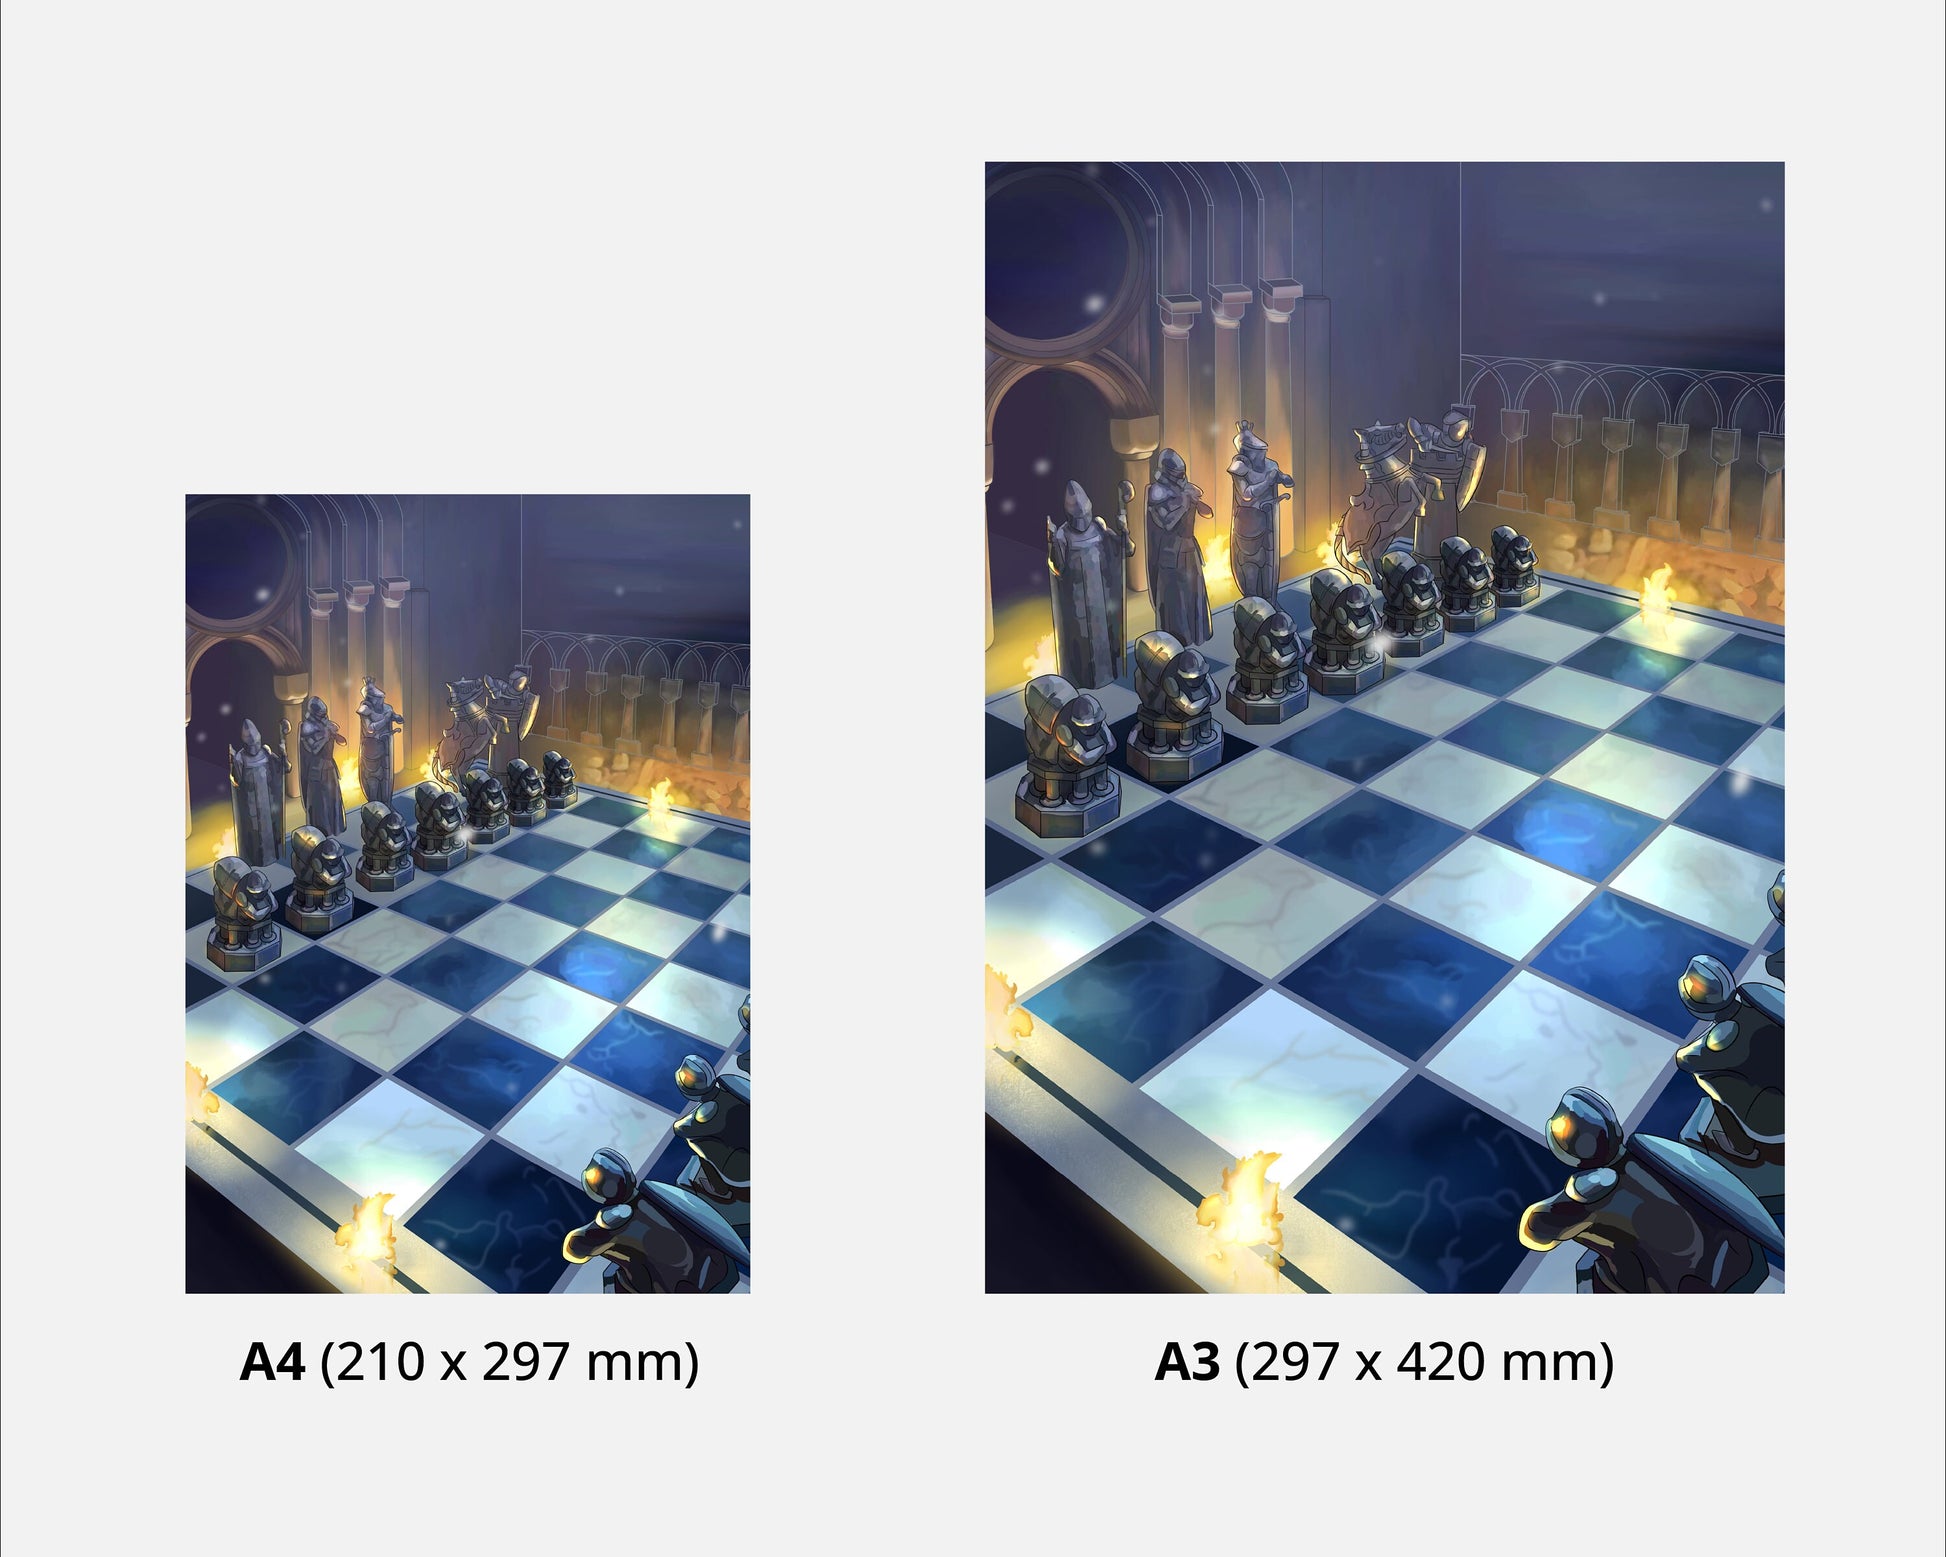 HP Movieposter - Wizard Art - Hogwarts print - Wall Art - Wizards Chess Art Work - Game Poster - Home Decor